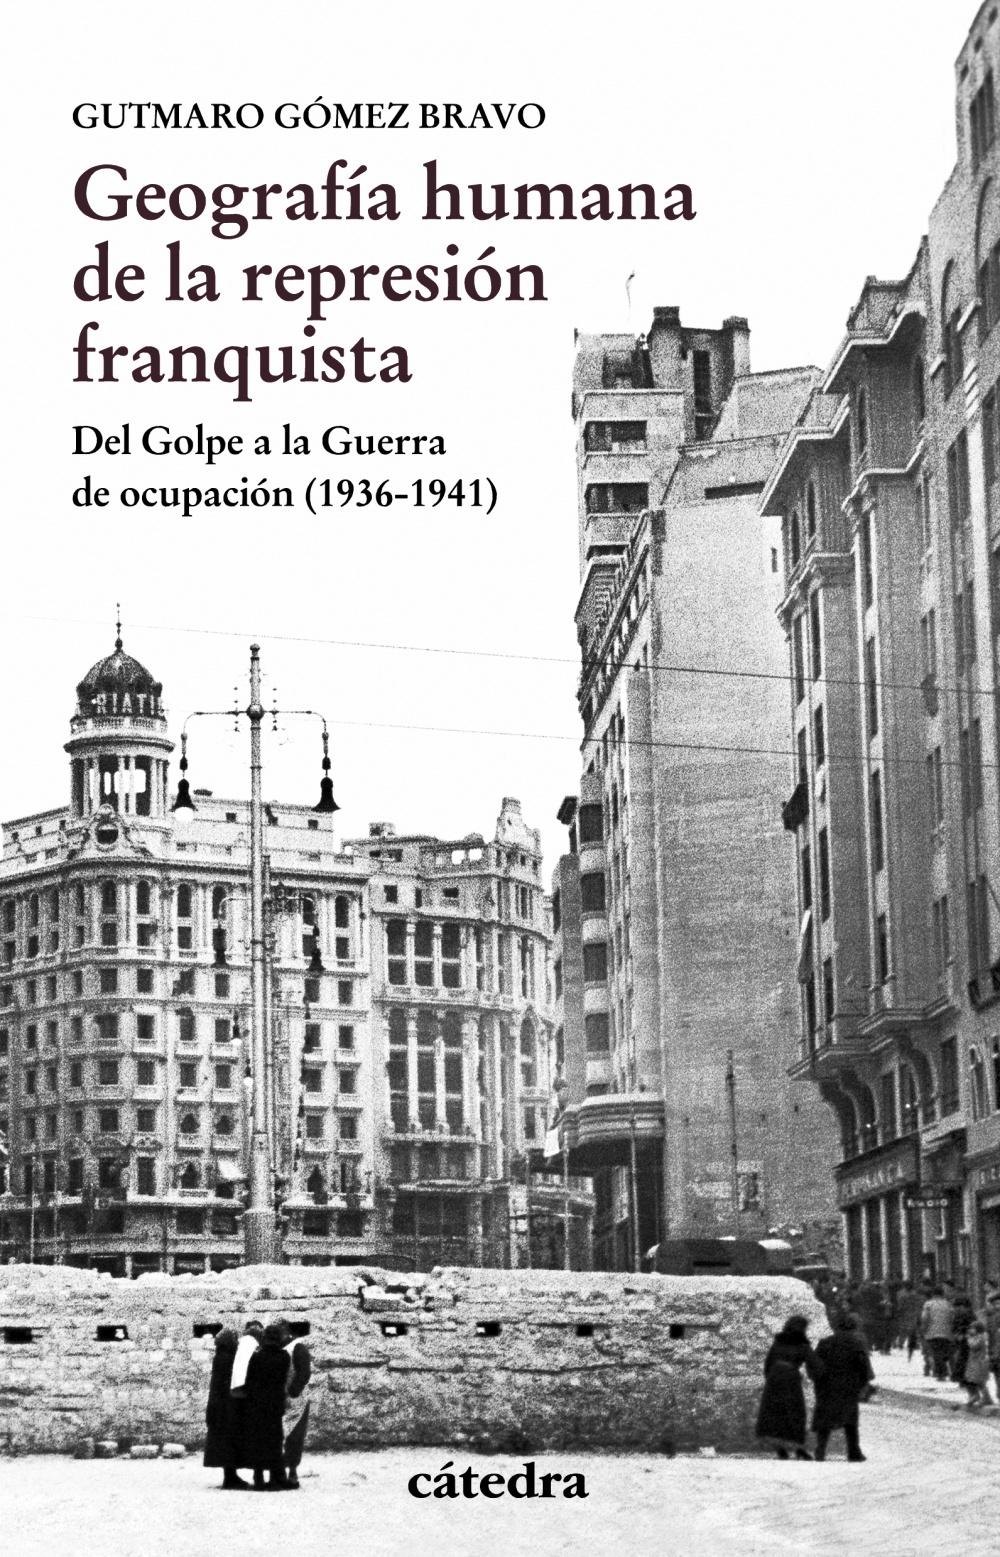 Geografía humana y la represión franquista "Del Golpe a la Guerra de ocupación (1936-1941)"